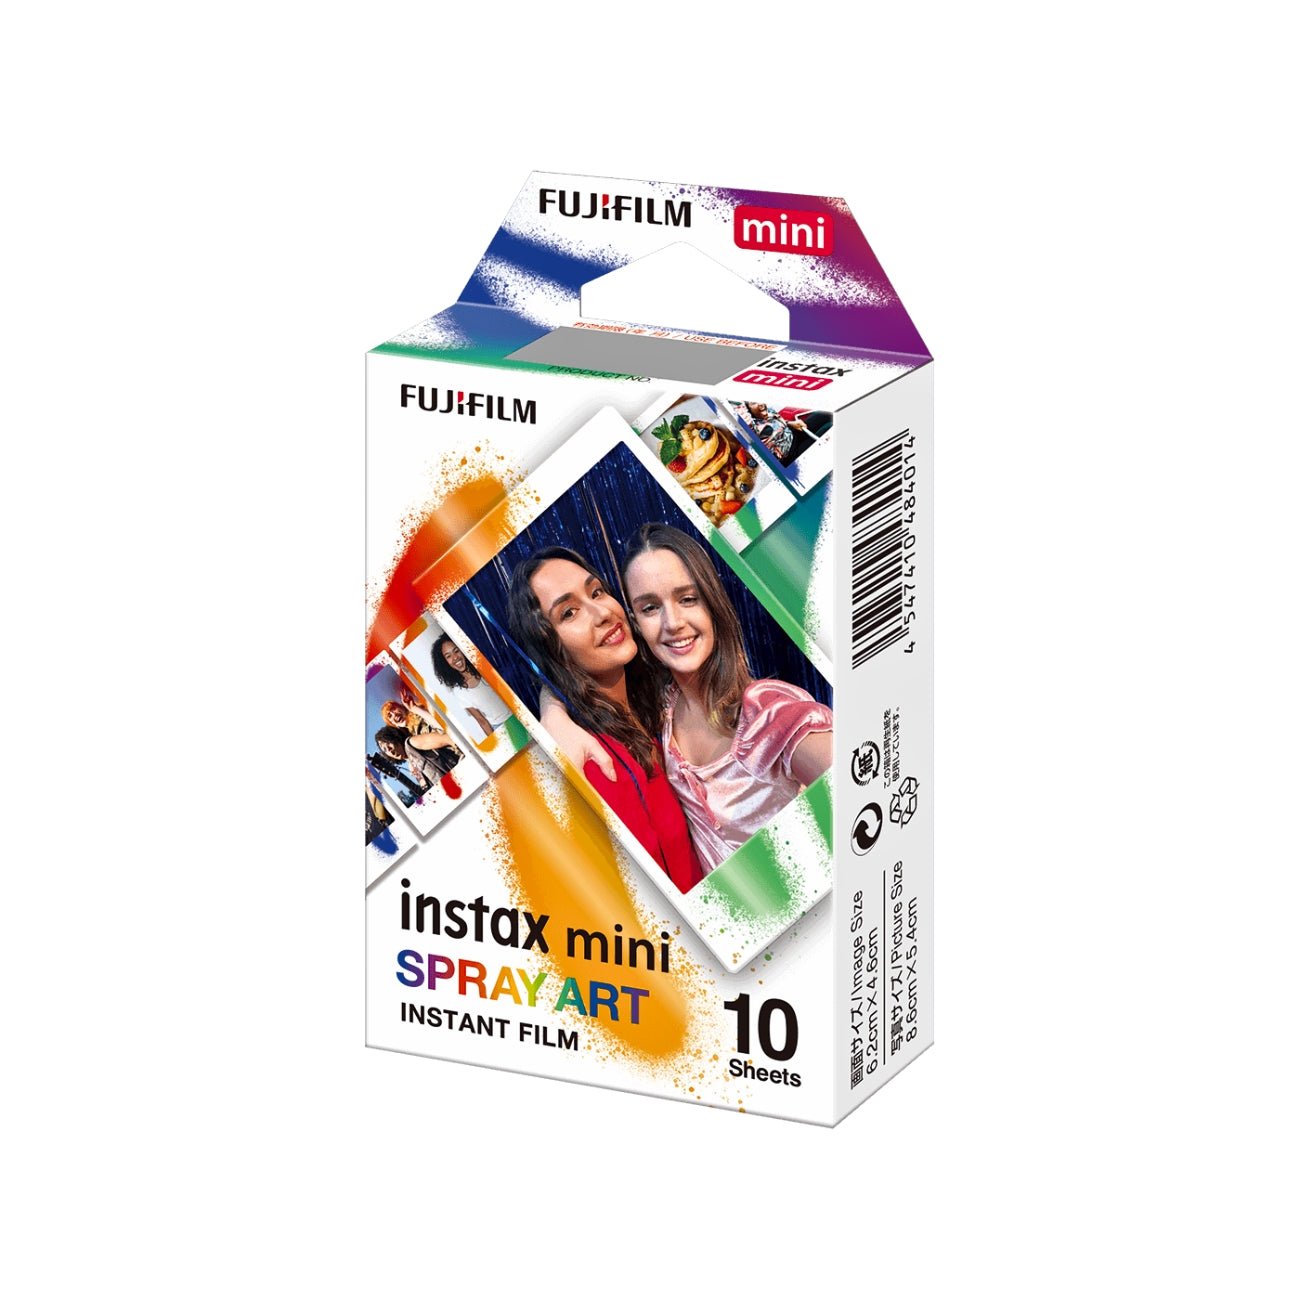 FUJIFILM INSTAX MINI Spray Art Instant Film (10 Exposures)